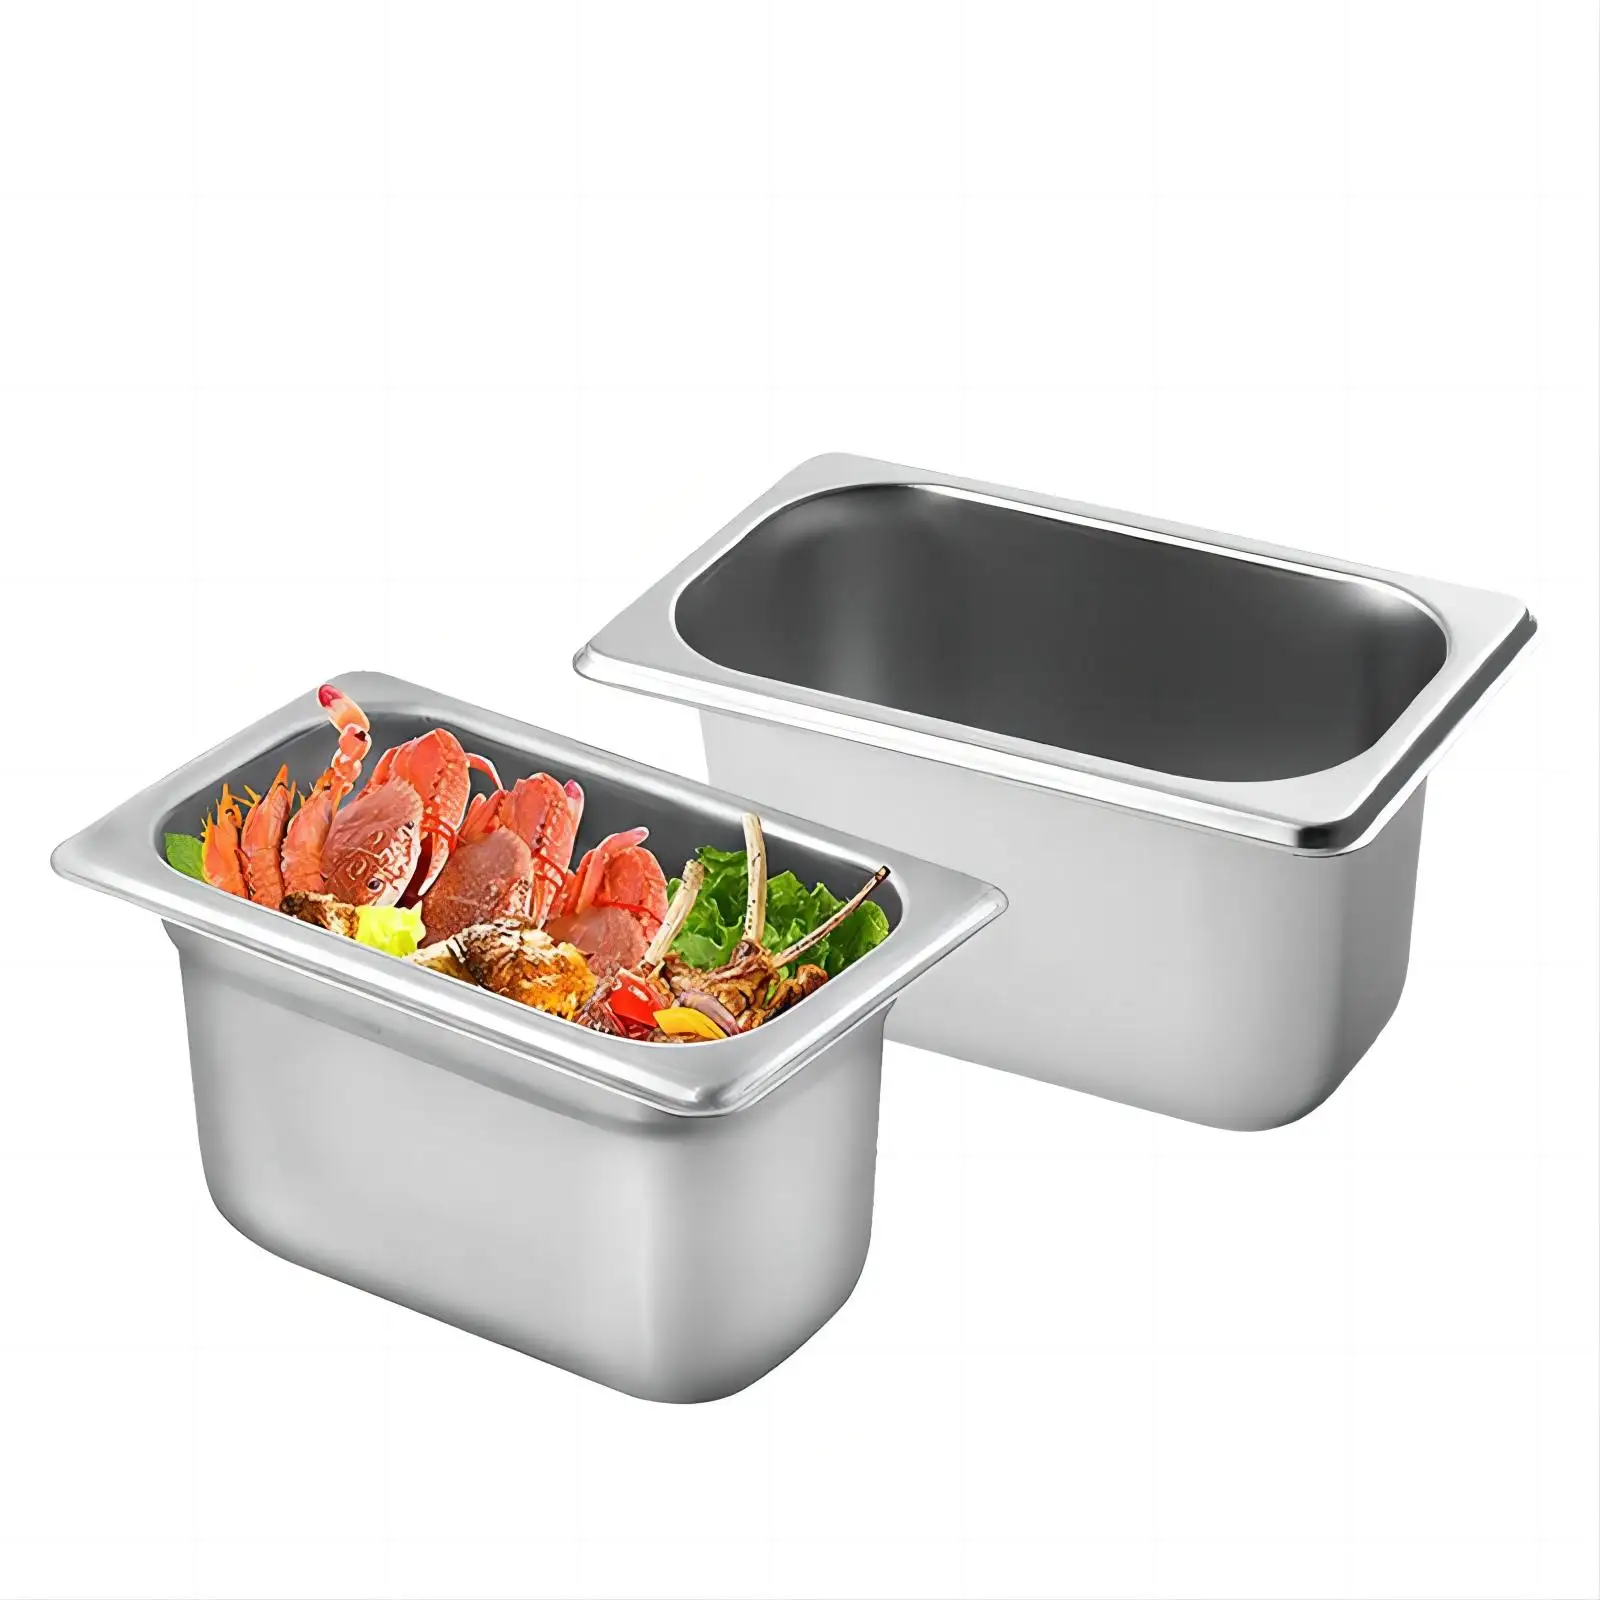 Daosheng рекламные кухонные напольные формы из нержавеющей стали для фуршета для хранения GN, контейнеры для еды, поднос для буфета, тарелка для подогрева еды